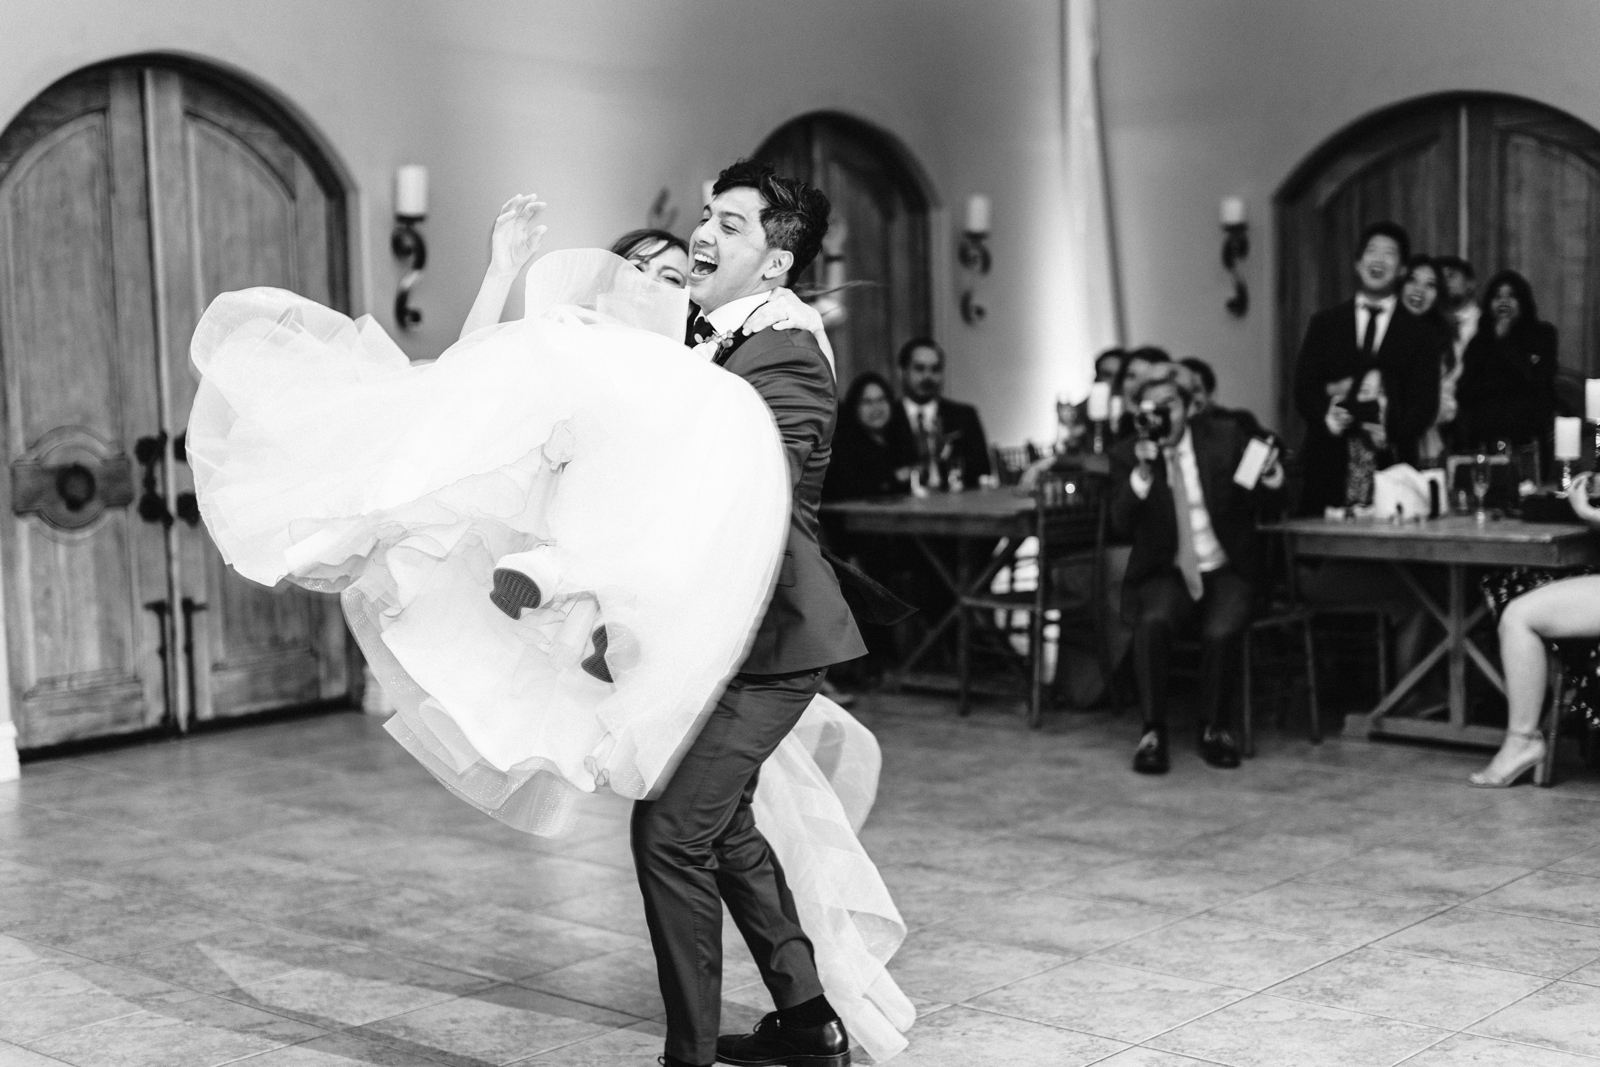 wedding reception dancing at villa de amore